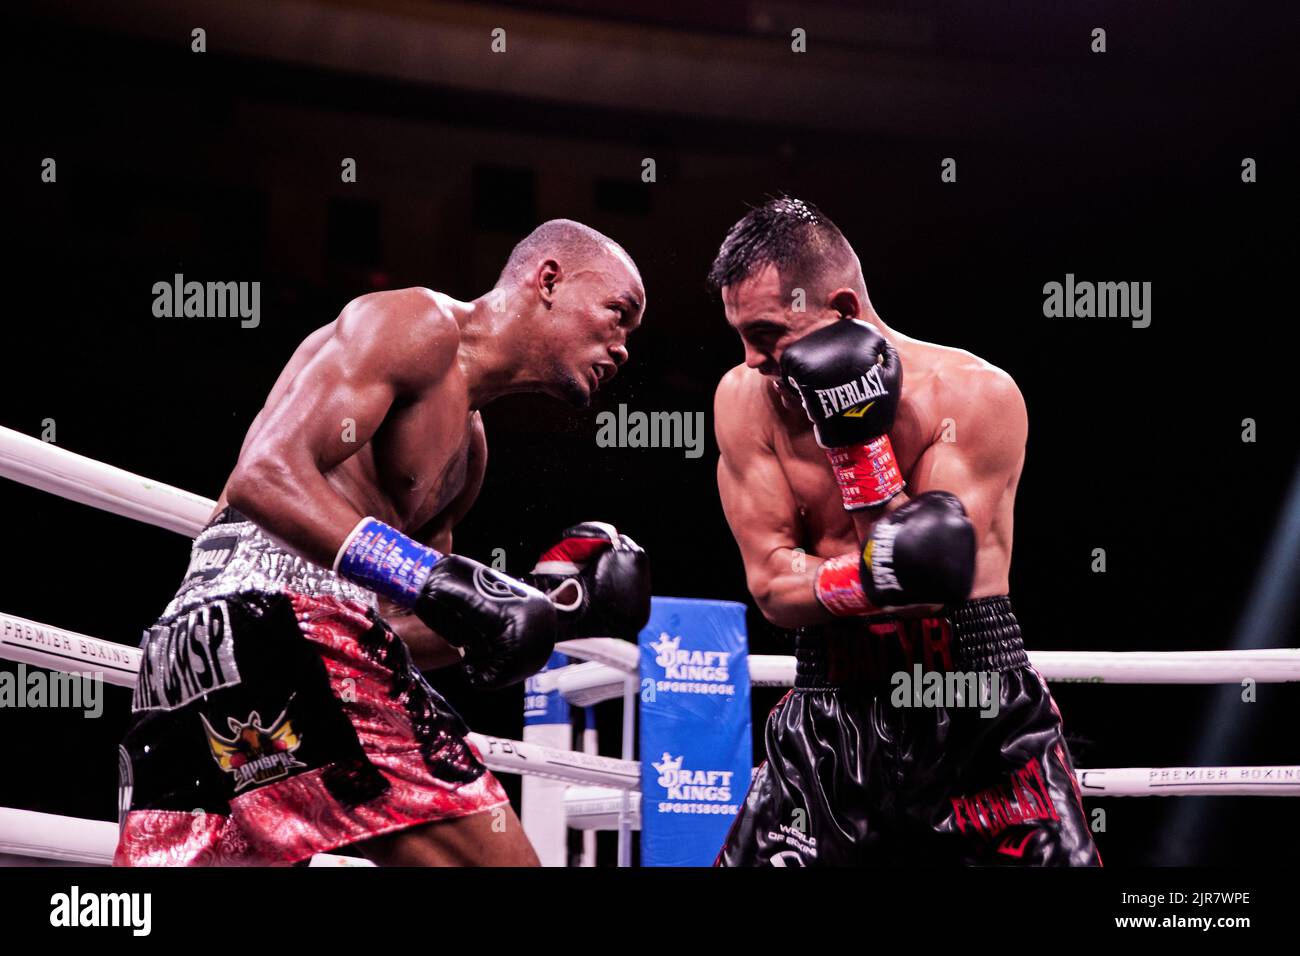 Pugile professionista WBA provvisorio super-leggero Alberto Puello sconfigge WBA Super-leggero Batyr Akhmedov in Professional Boxing match Foto Stock